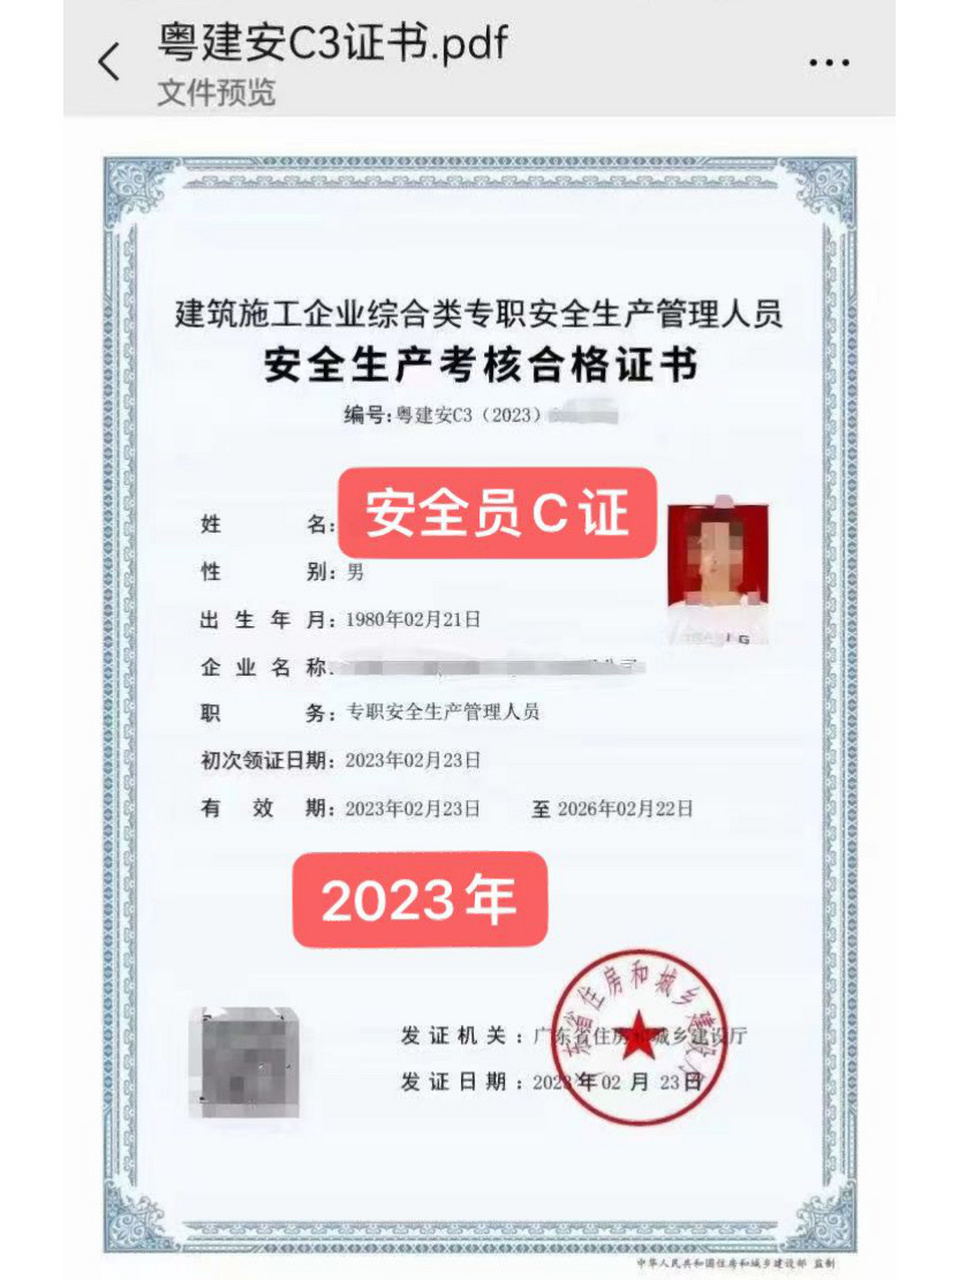 安全员c3证书考下来了,证书出新样板啦7515 2月23号在广州考的